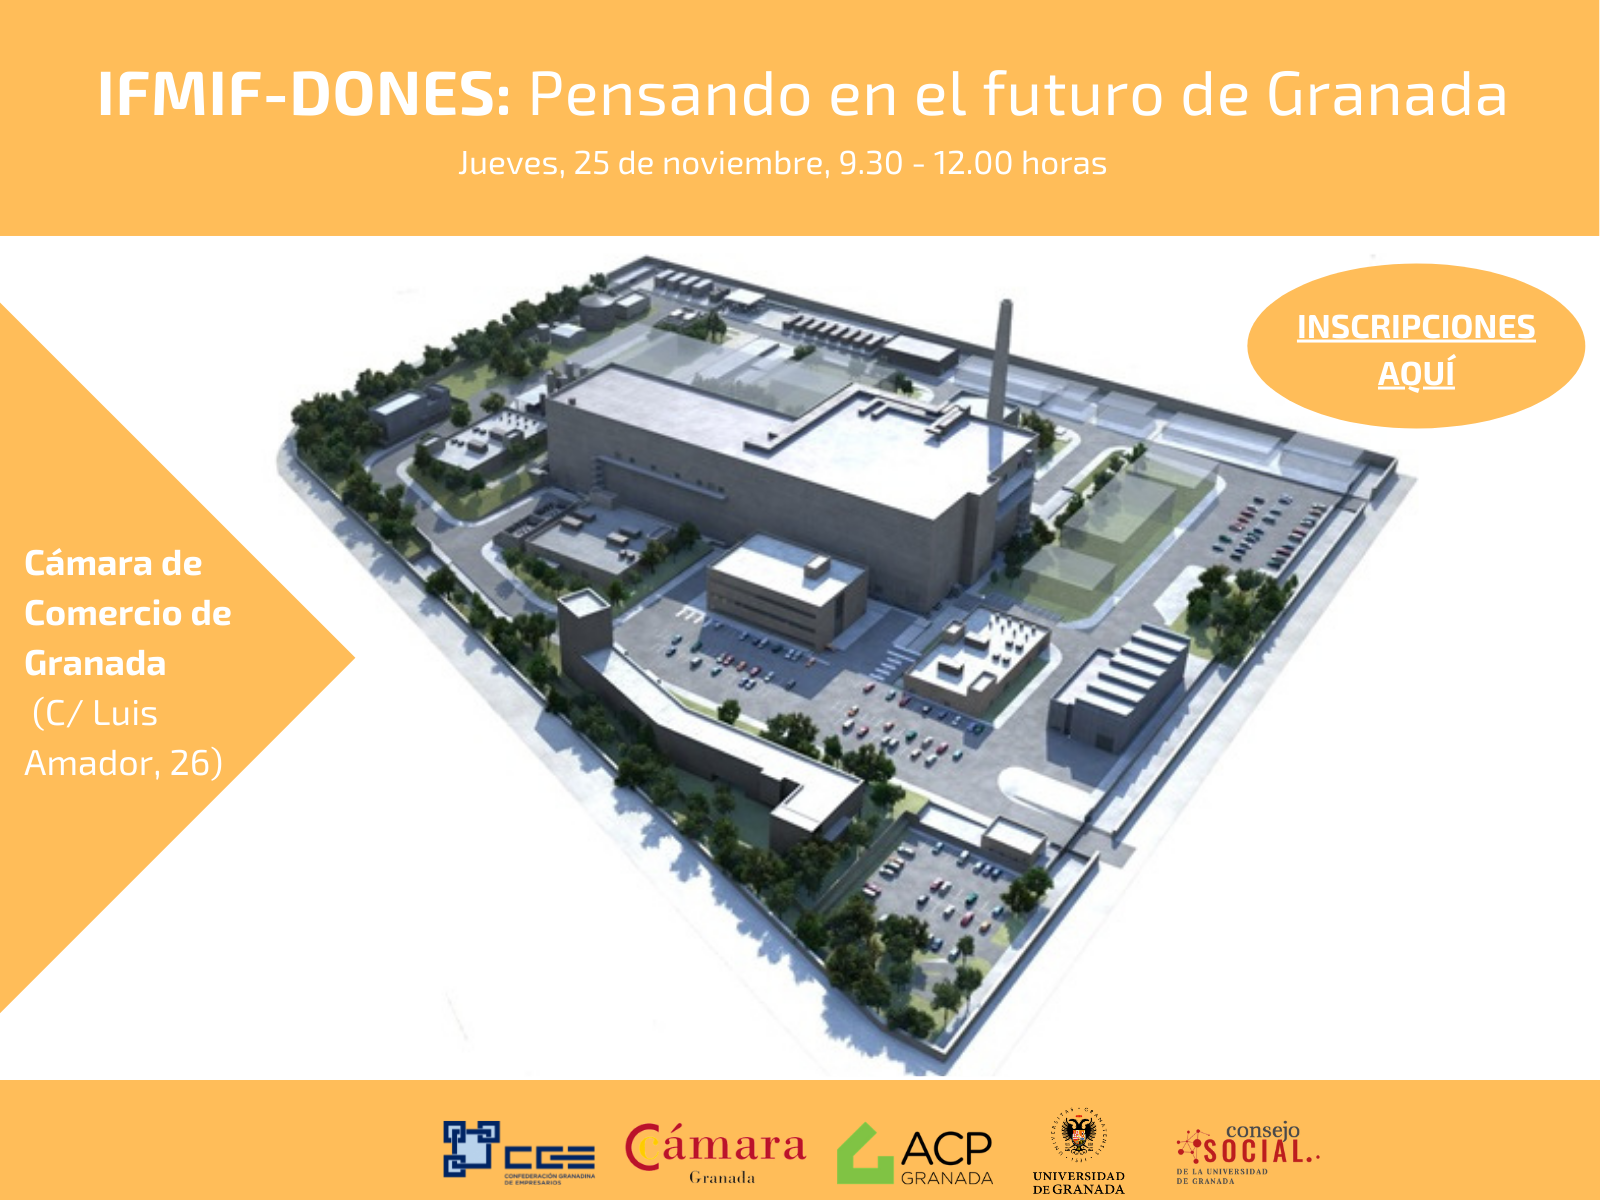 Cartel de la jornada. Muestra un modelo 3D del futuro edificio que albergará la instalación del IFMIF-DONES. Abajo aparecen los logos de los organizadores.